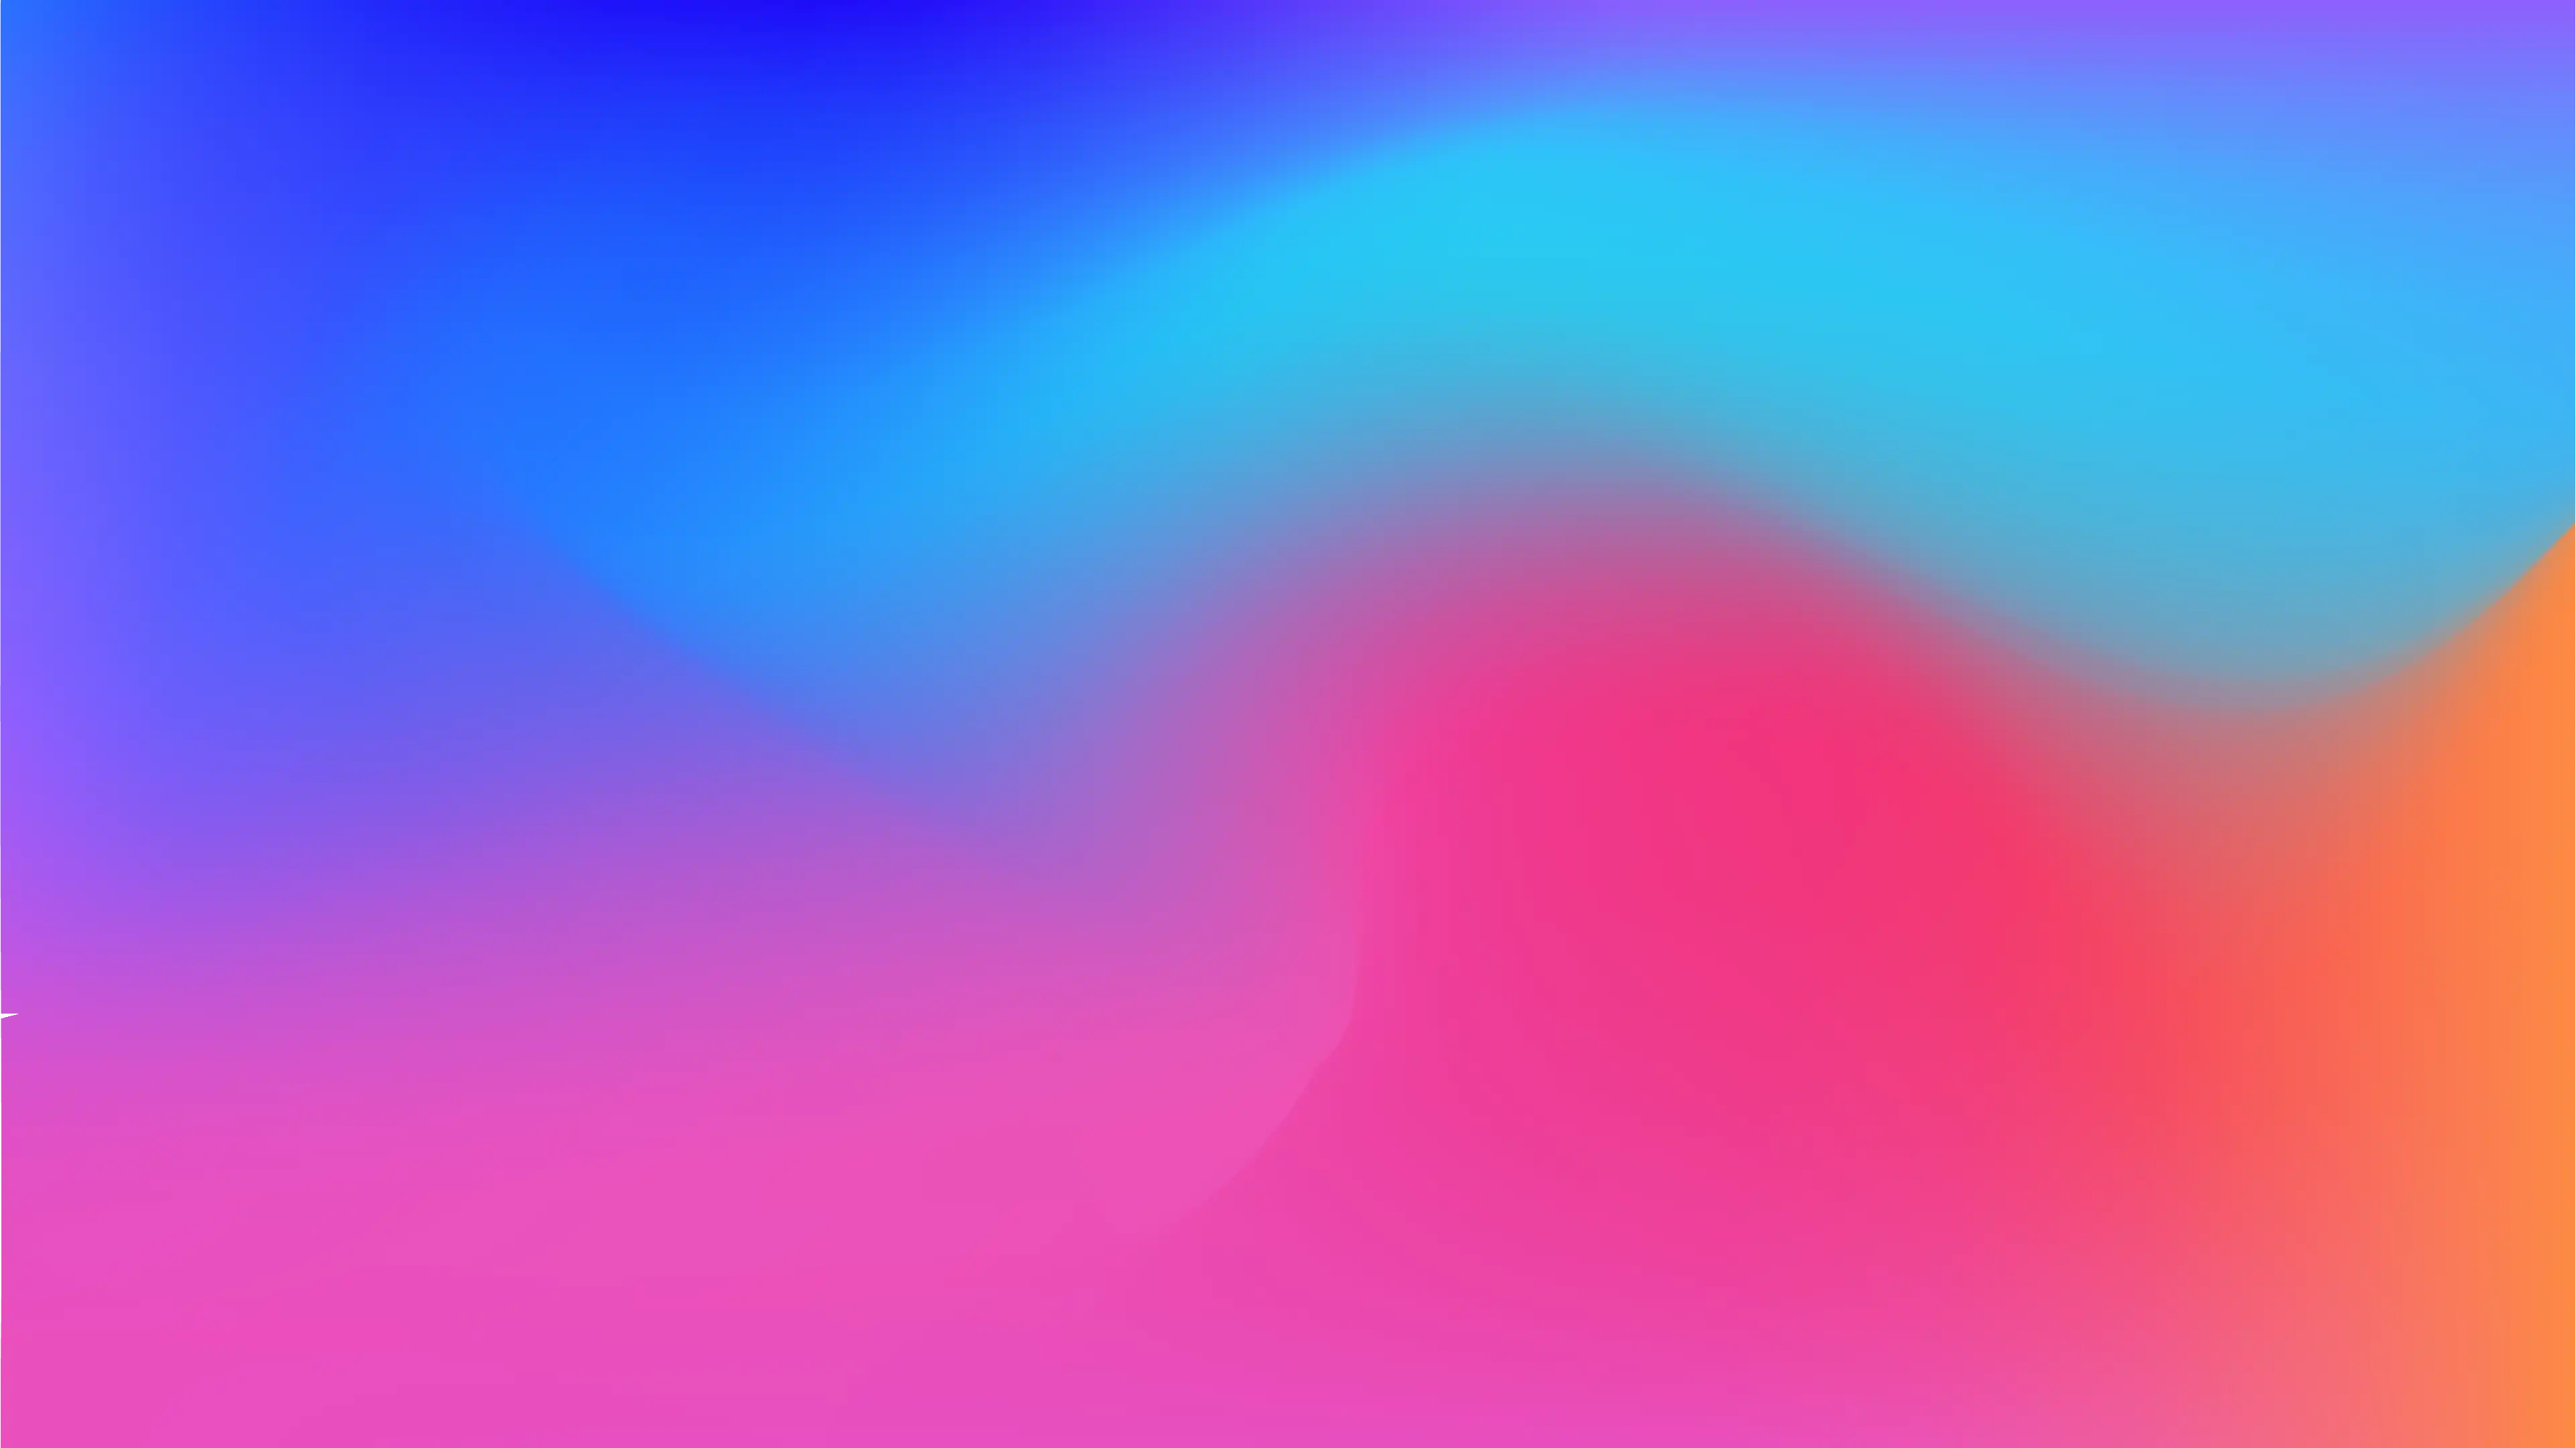 Von Violett zu Blau übergehender Hintergrund hinter den Symbolen der Benutzerschnittstelle von kSuite.